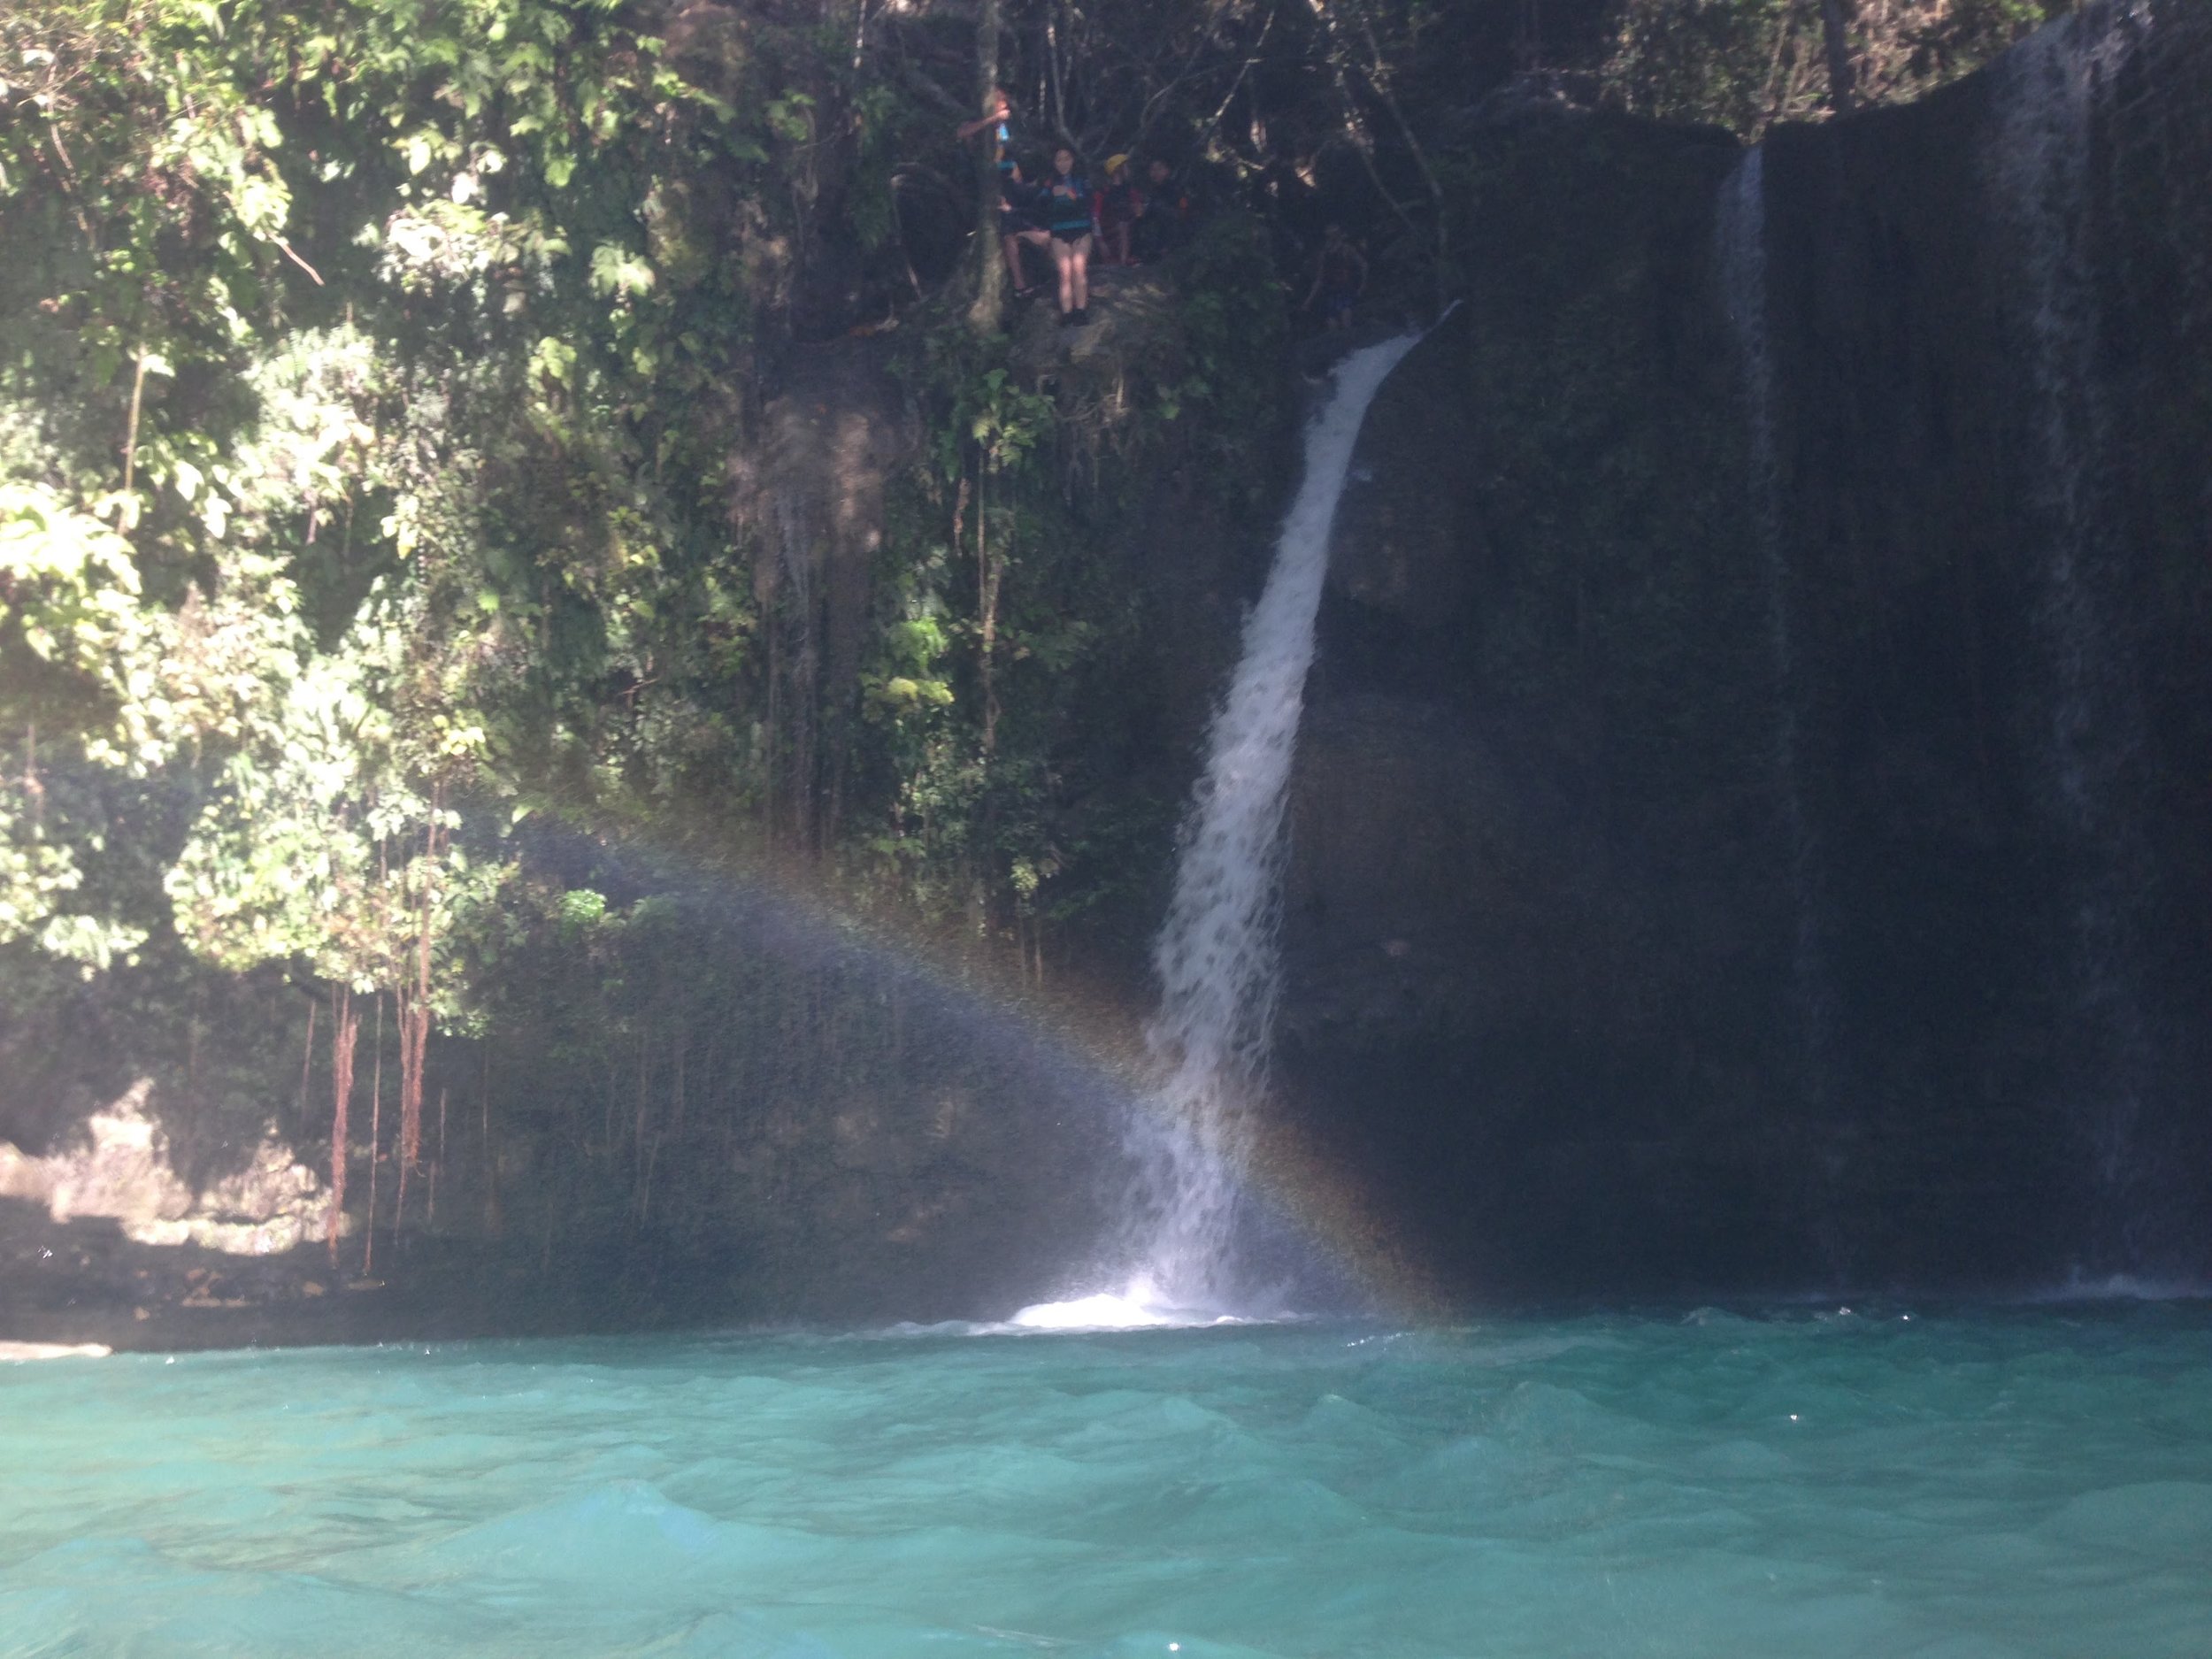  Canyoneering Kawasa waterfall Philippines - 4 